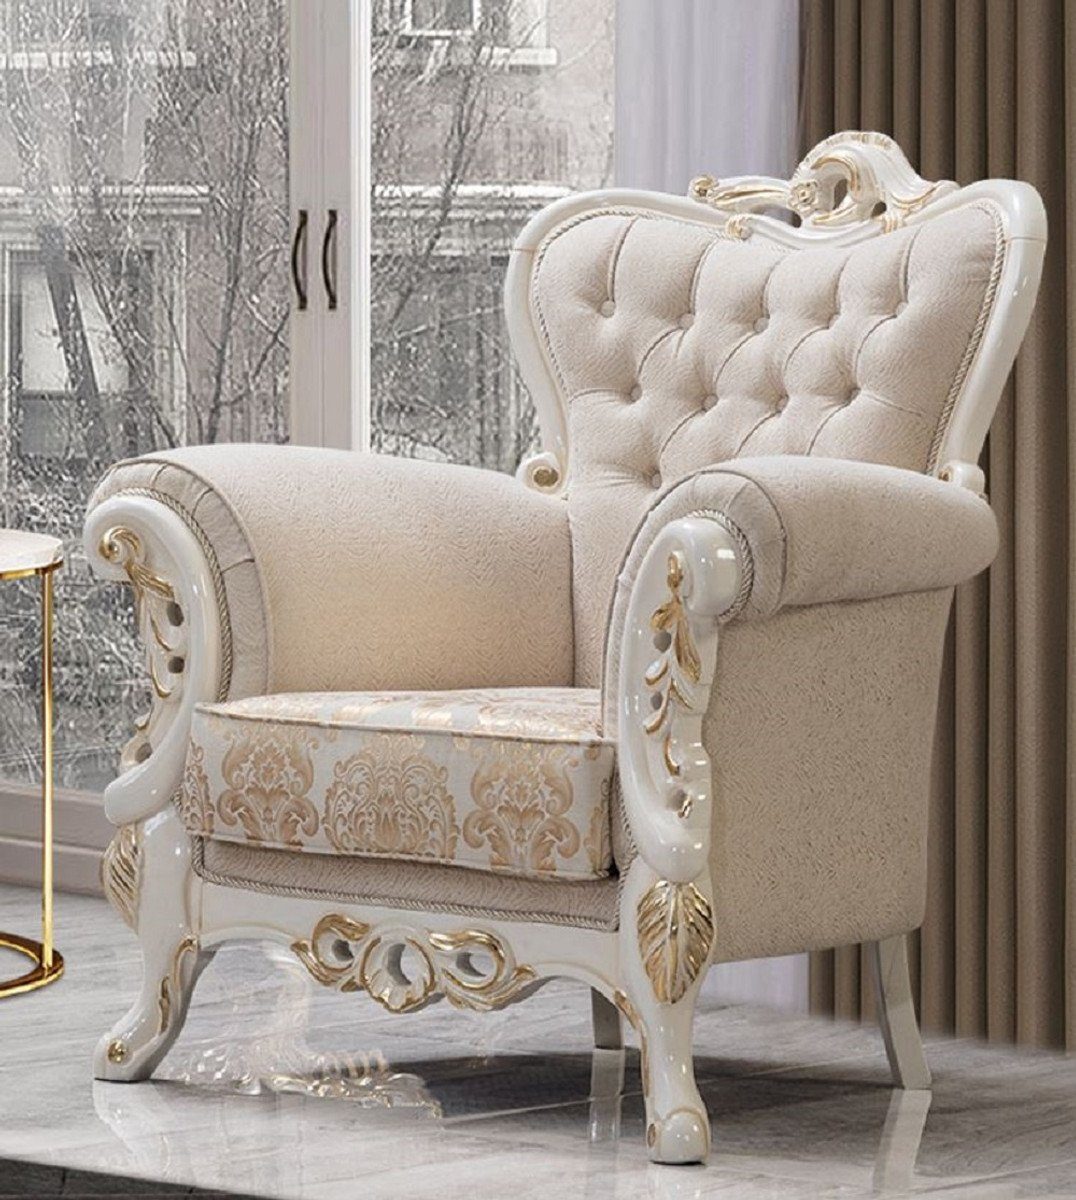 Casa Padrino Sessel Casa Padrino Luxus Barock Sessel Weiß / Gold - Prunkvoller Wohnzimmer Sessel mit elegantem Muster - Luxus Wohnzimmer Möbel im Barockstil - Barock Möbel - Barock Einrichtung